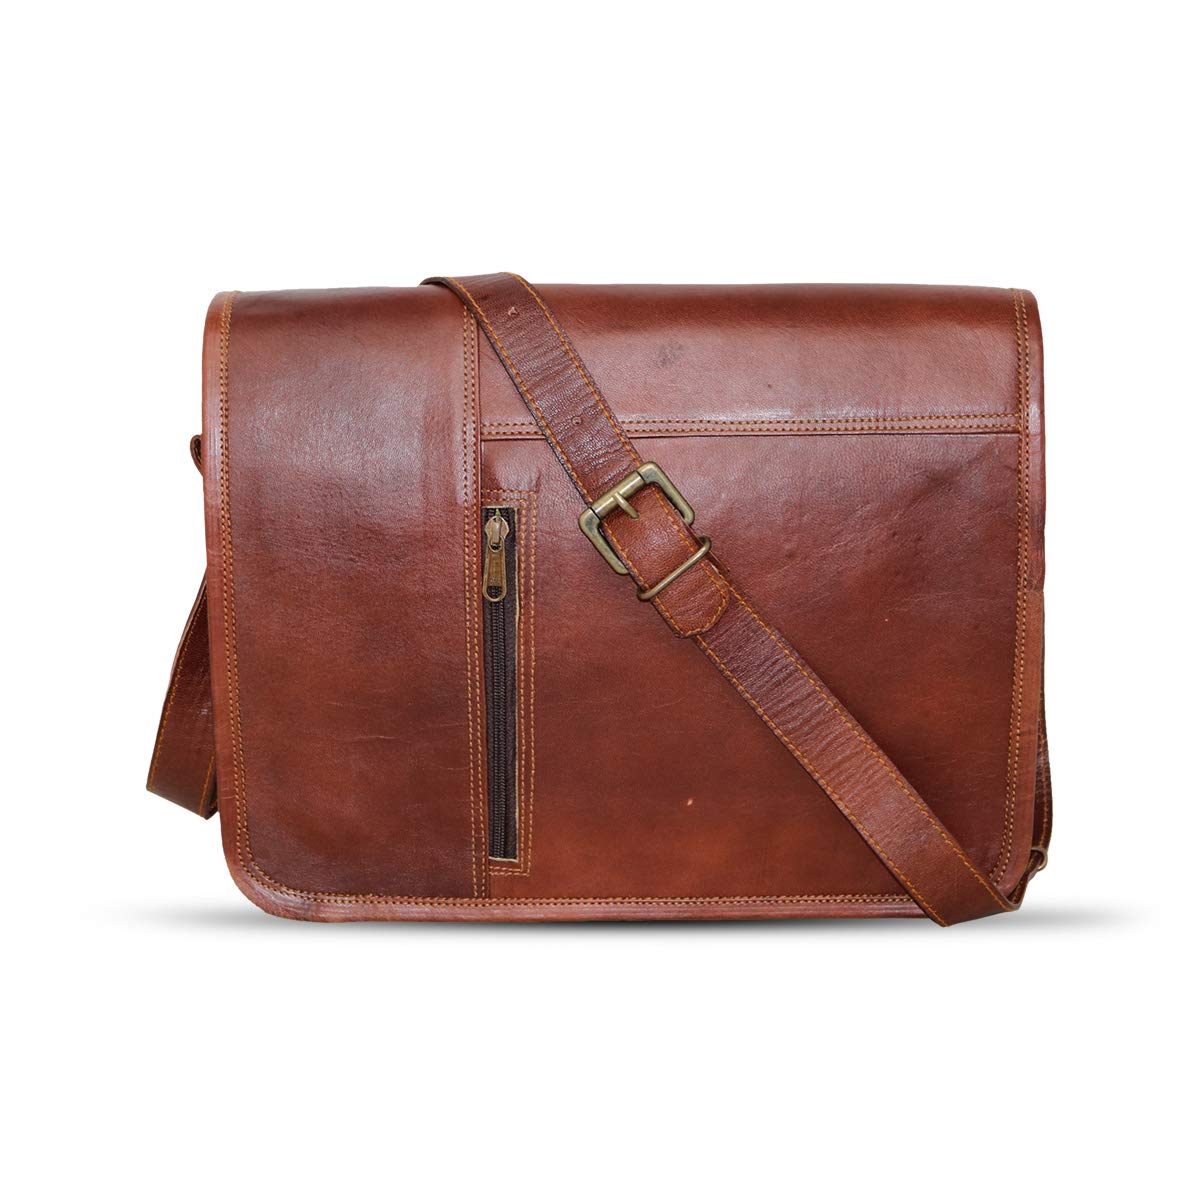 15" leather messenger bag laptop case office briefcase gift for men computer distressed shoulder bag